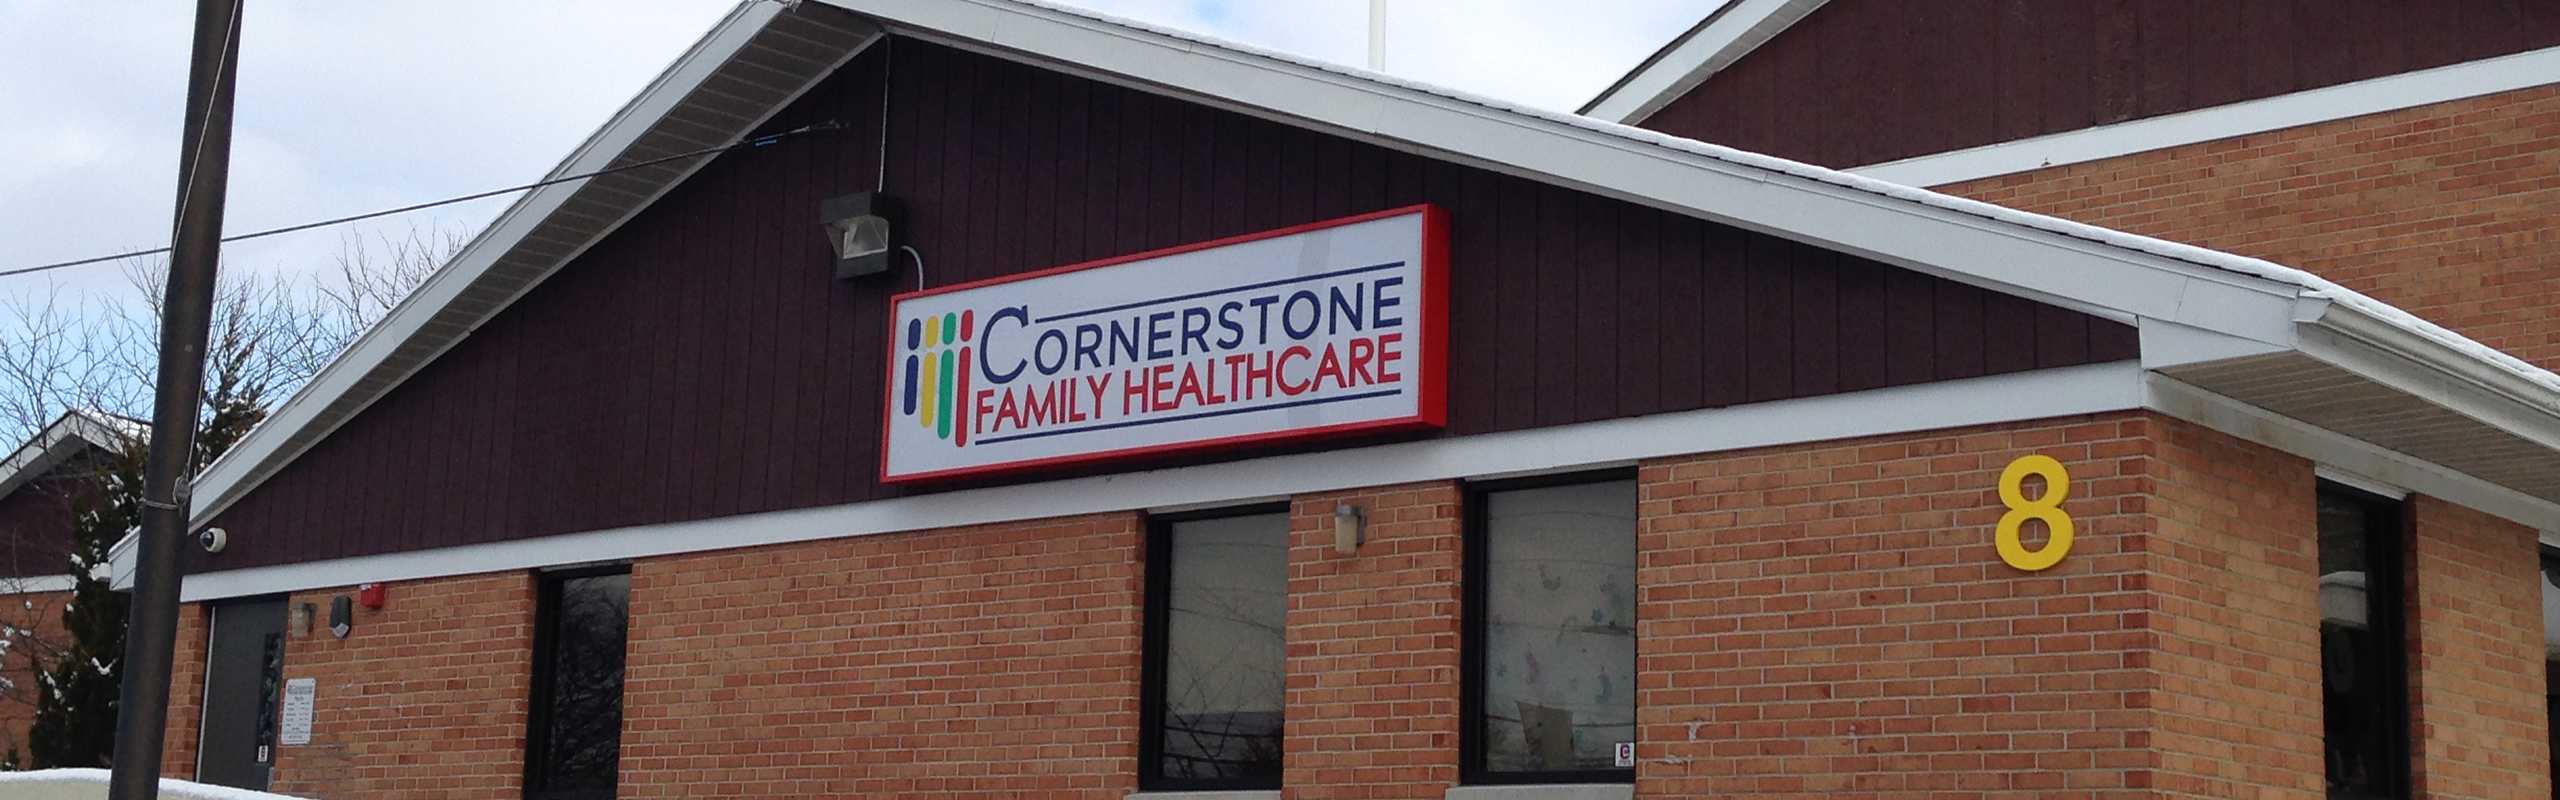 Cornerstone Family Healthcare - Binghamton